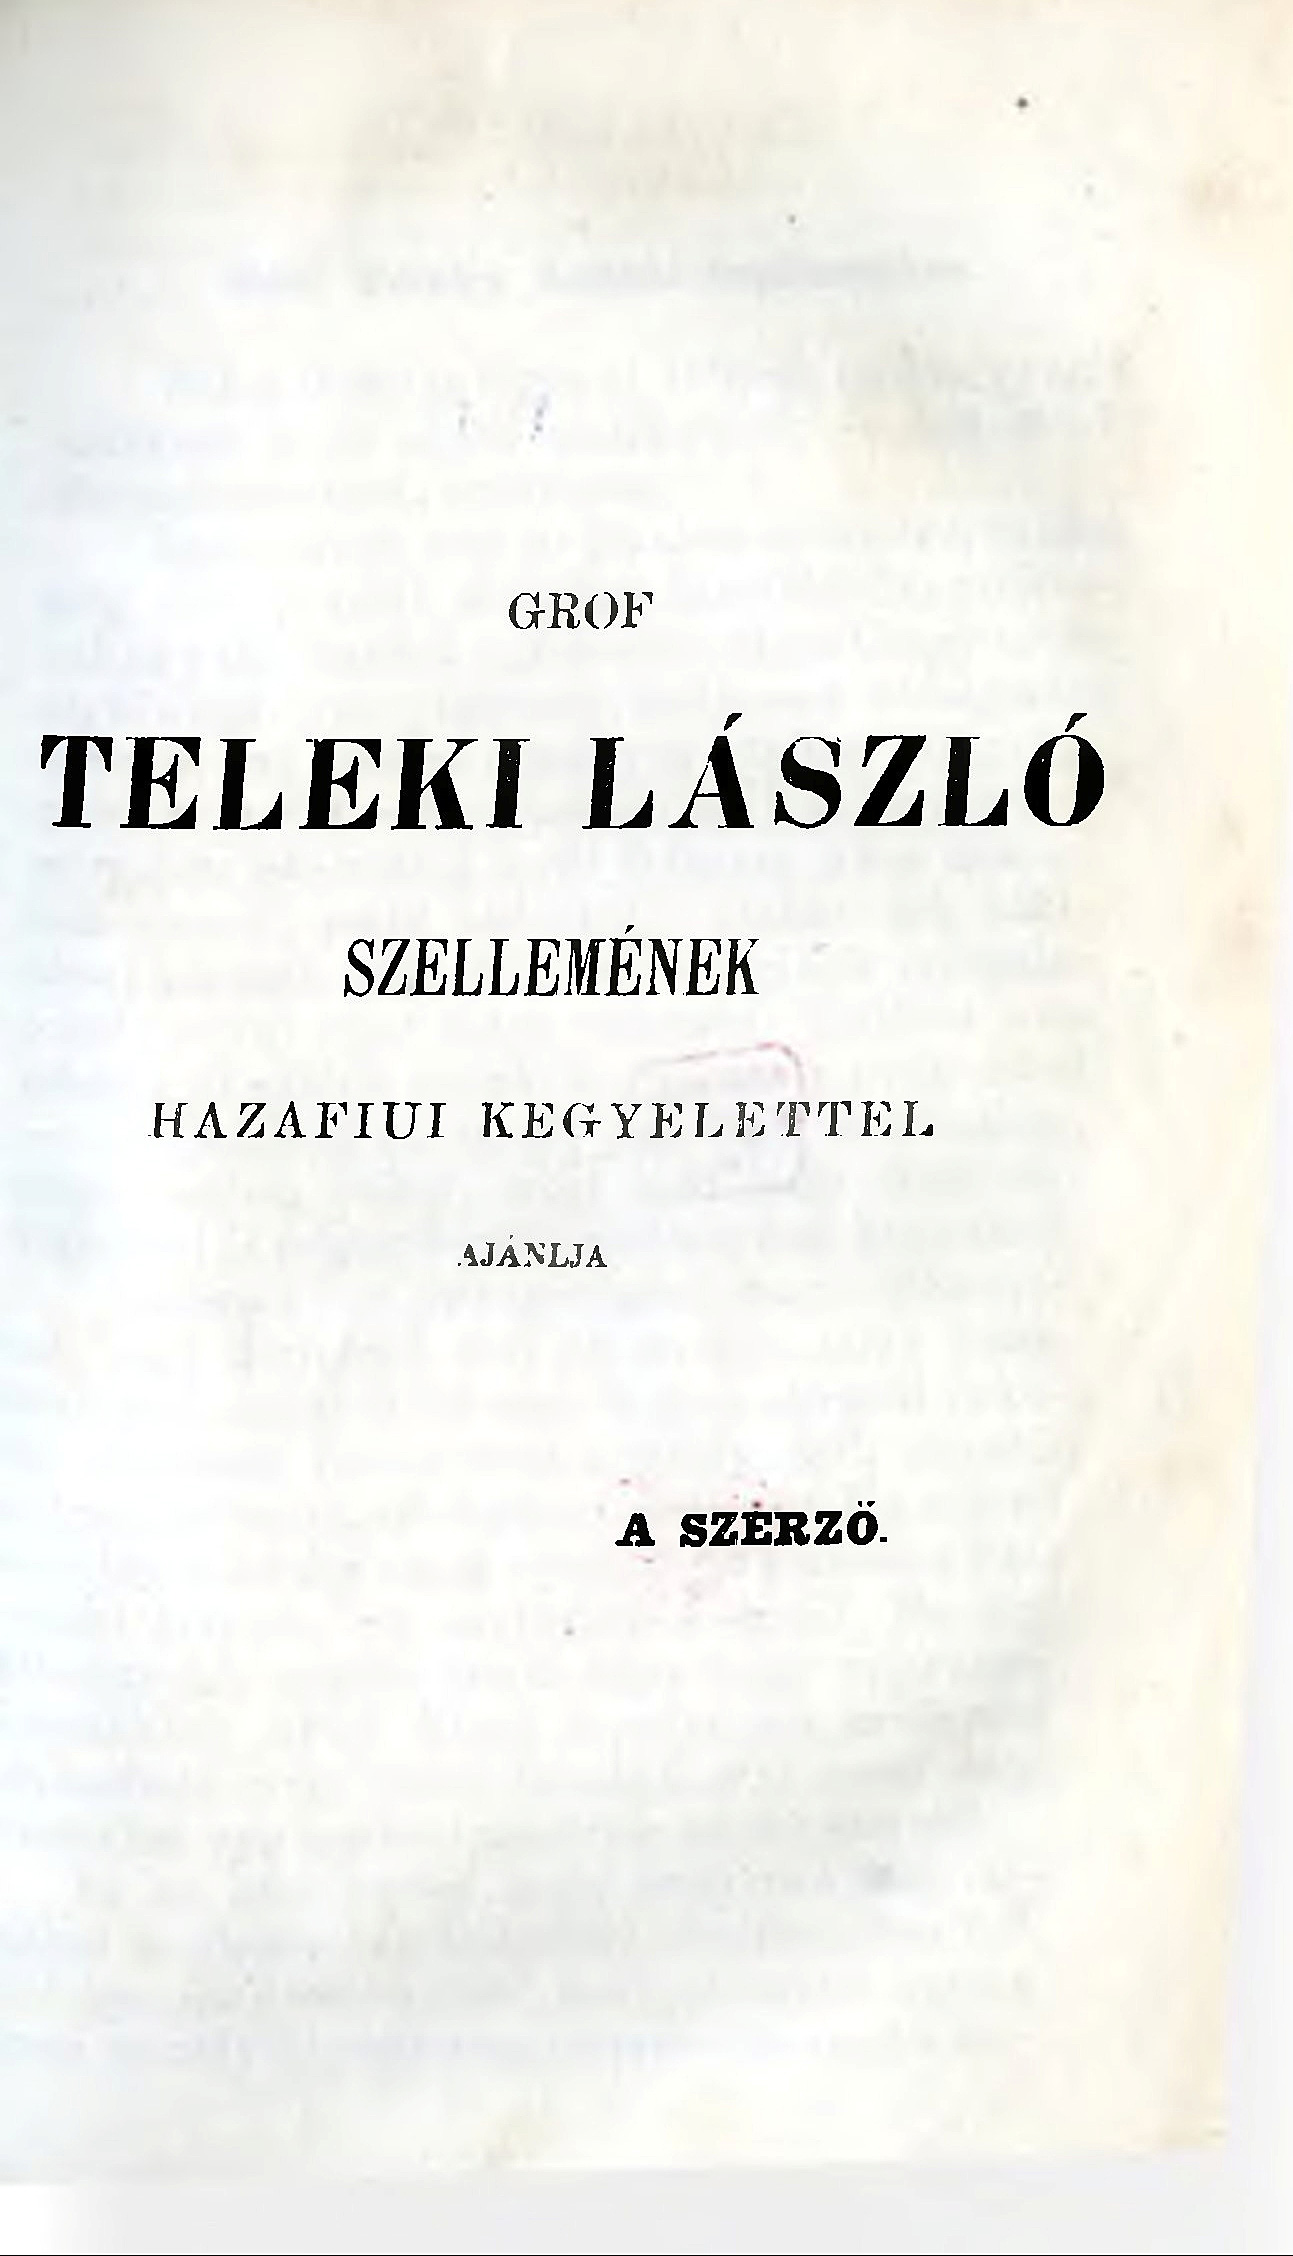 Sztrókay Béla gyóni földbirtokos „Magyarhoni korszerű eszmék” című kötete